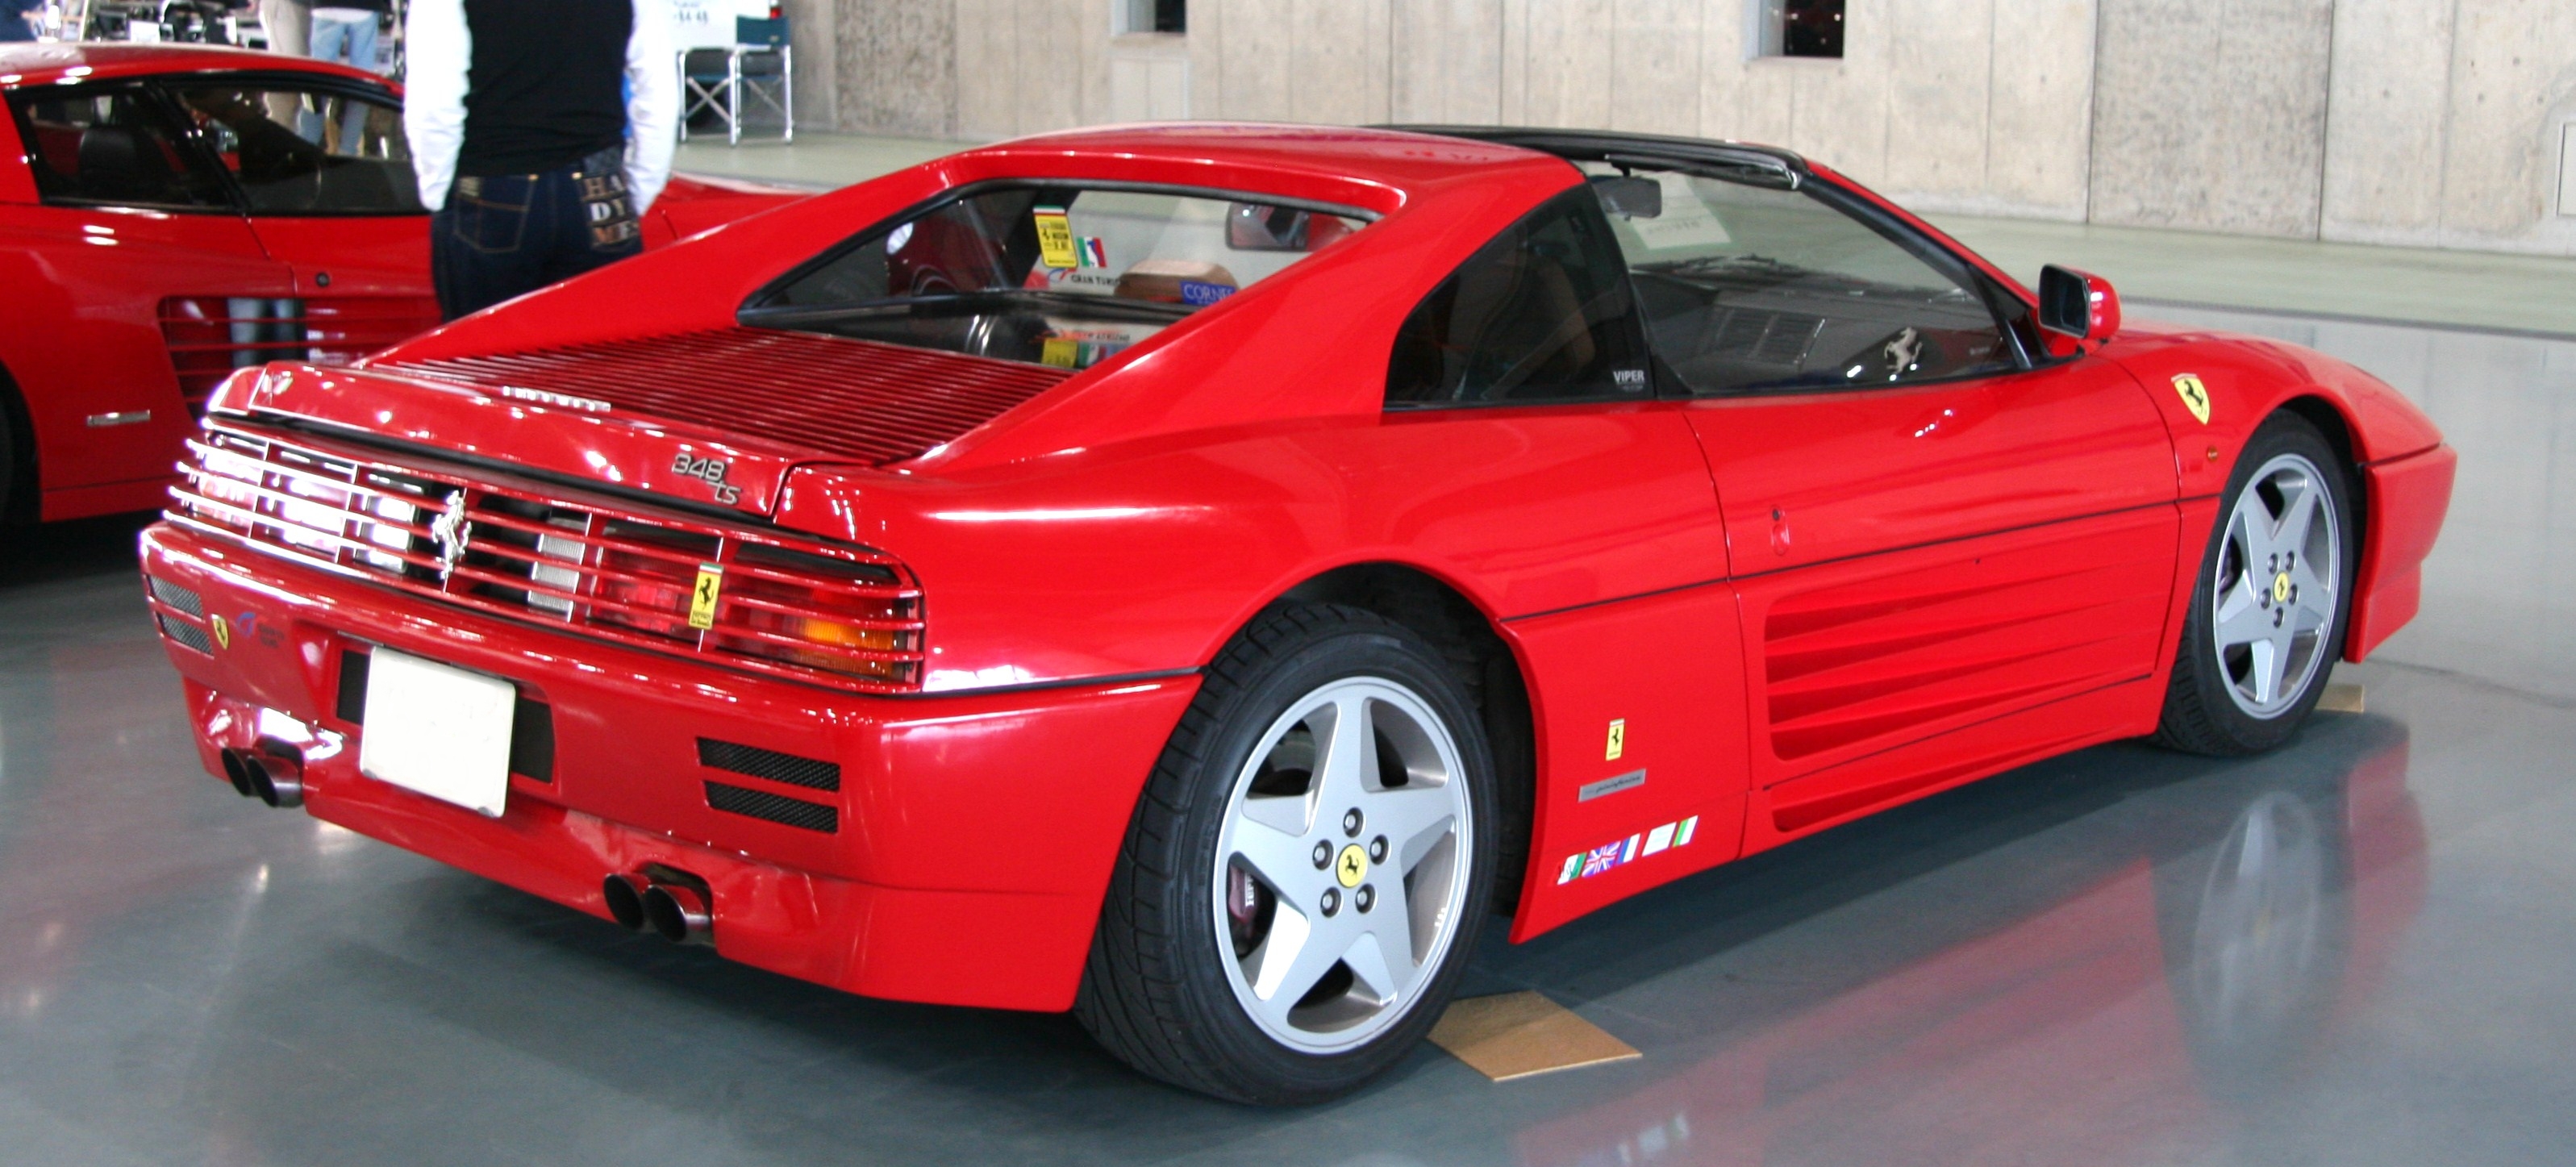 Ferrari 348 image #7